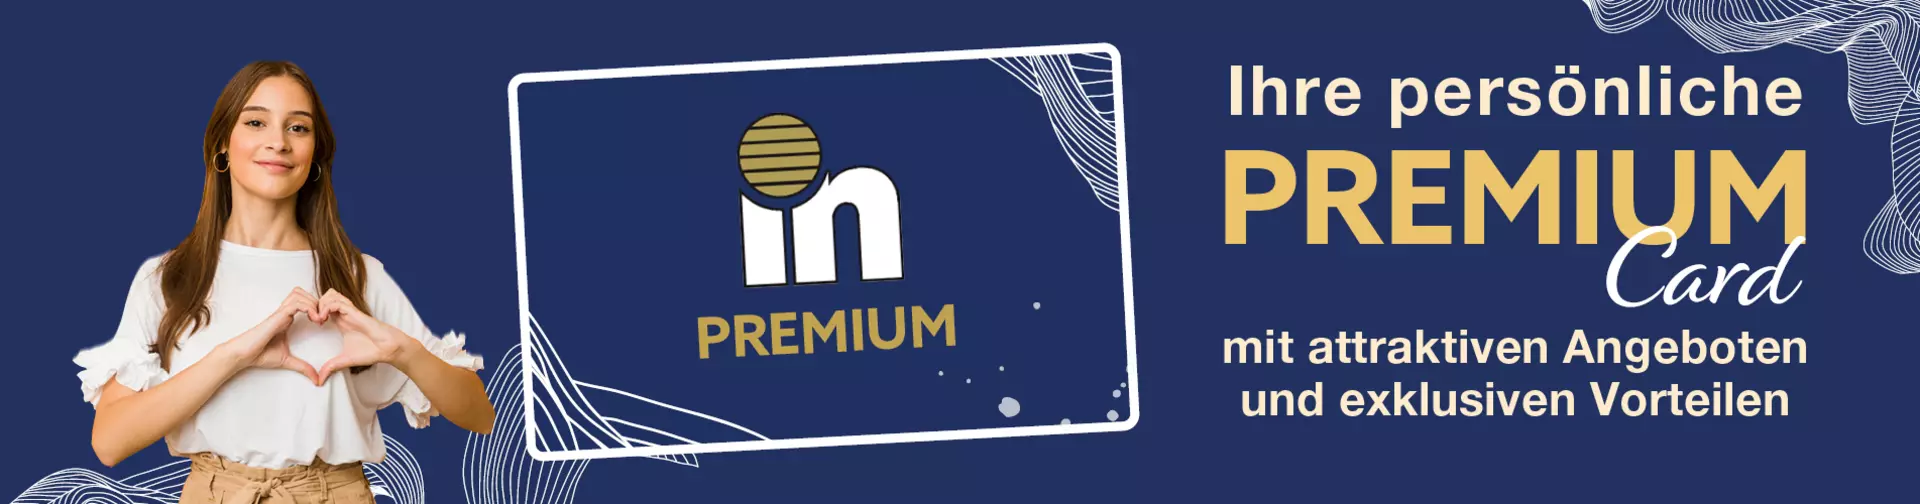 Ihre Persönliche Premium Card von Möbel Inhofer - jetzt Kundenkarte holen und von attraktiven Angeboten sowie exklusiven Vorteilen profitieren!